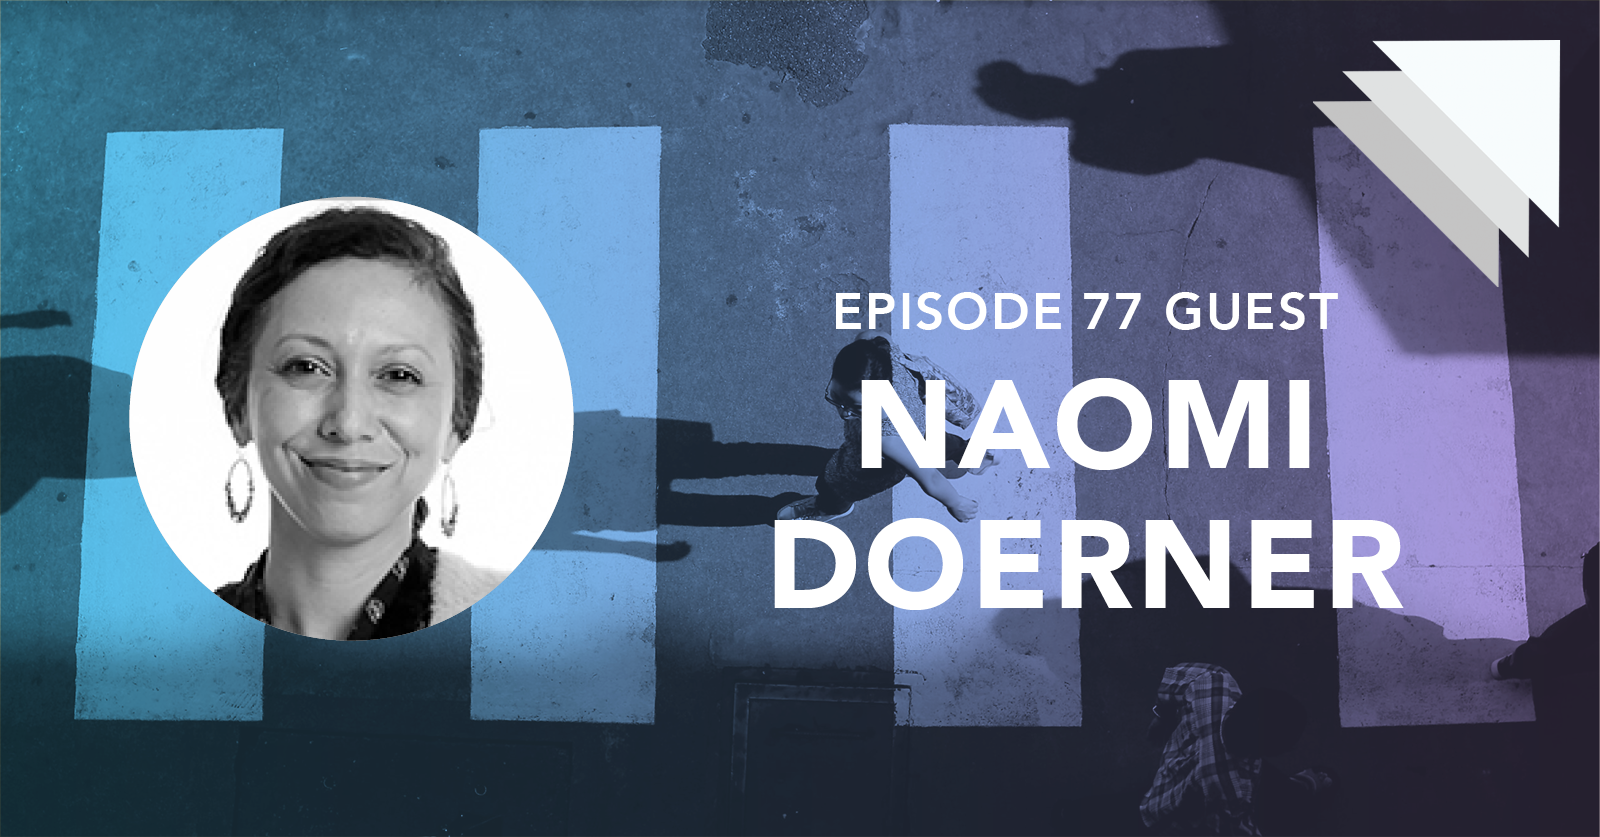 Episode 77 guest Naomi Doerner